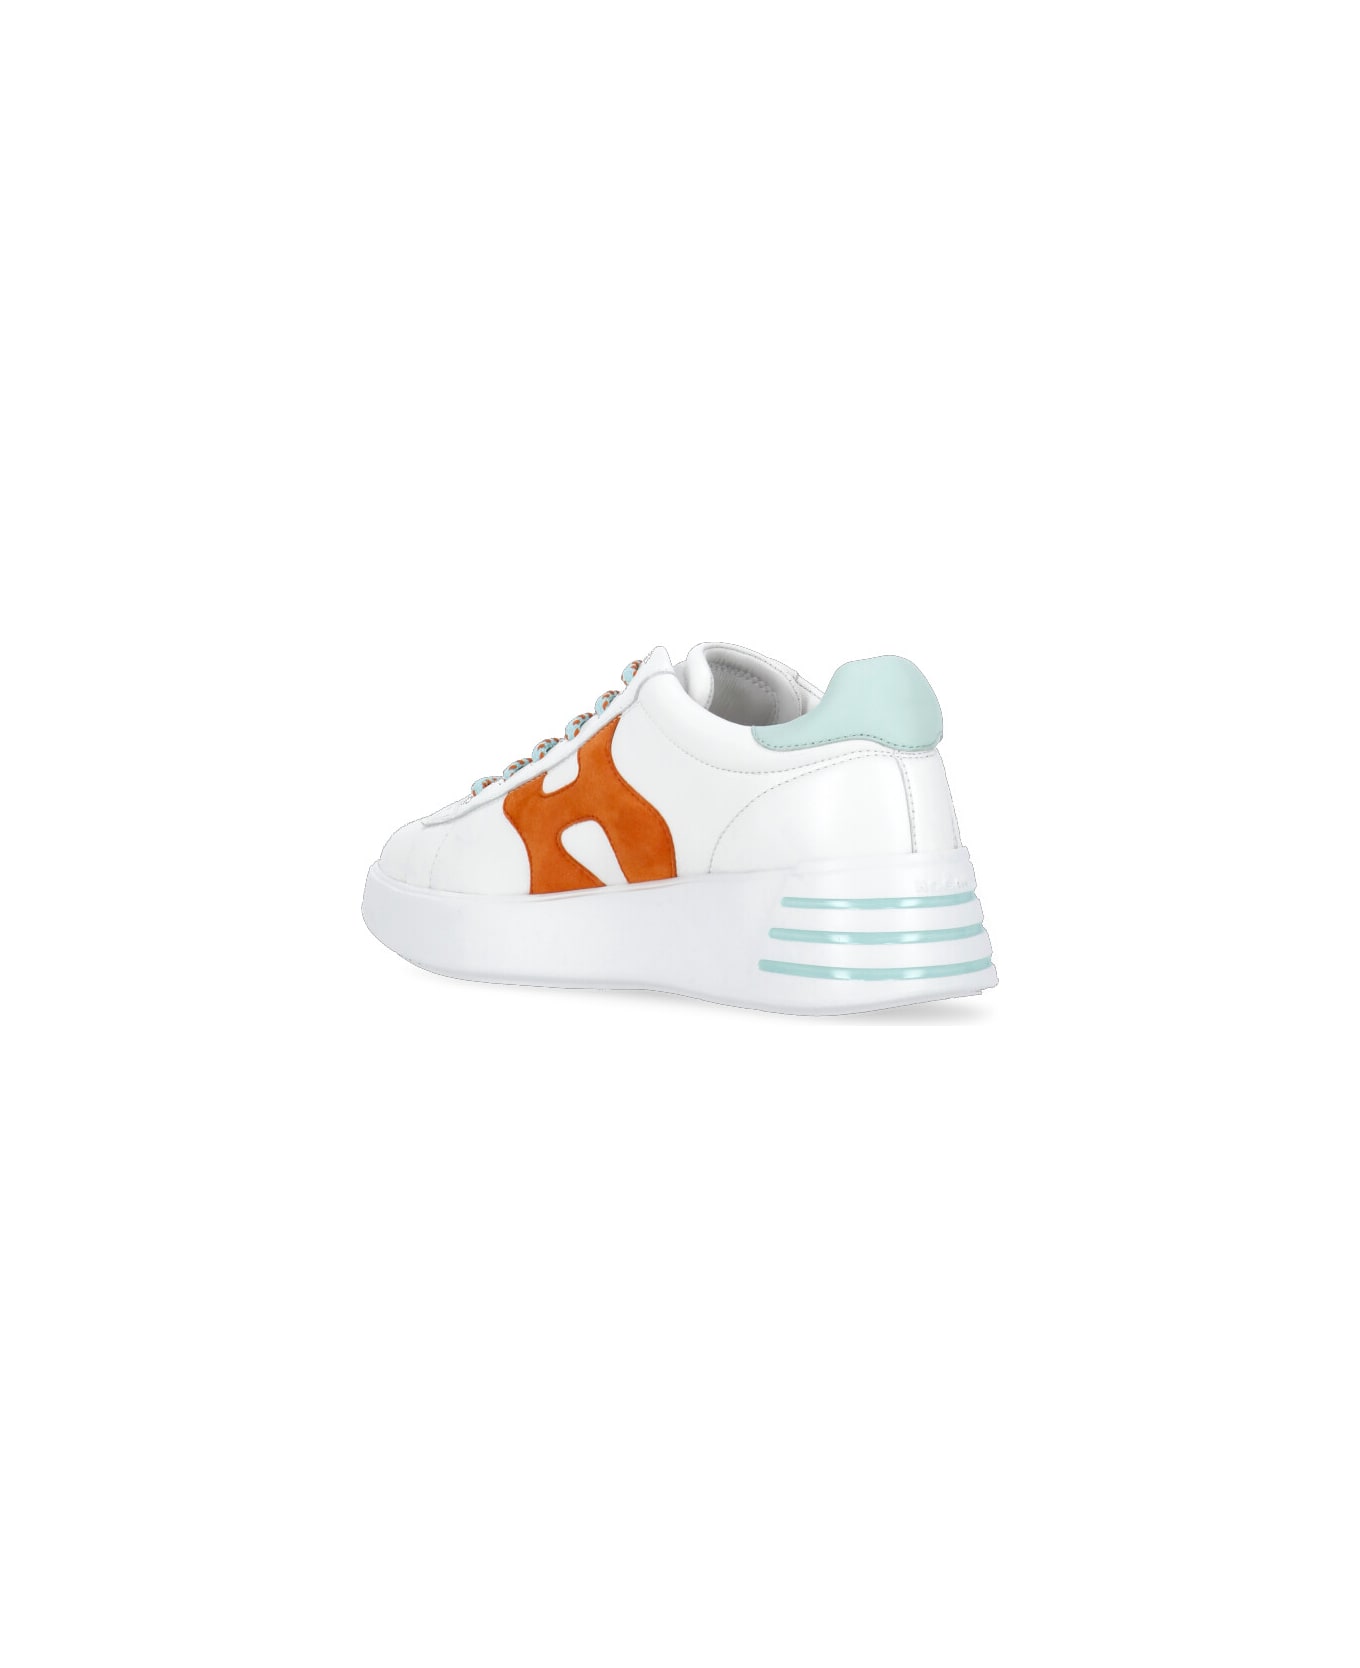 Hogan Rebel H564 Sneakers - White/light Blue/orange スニーカー